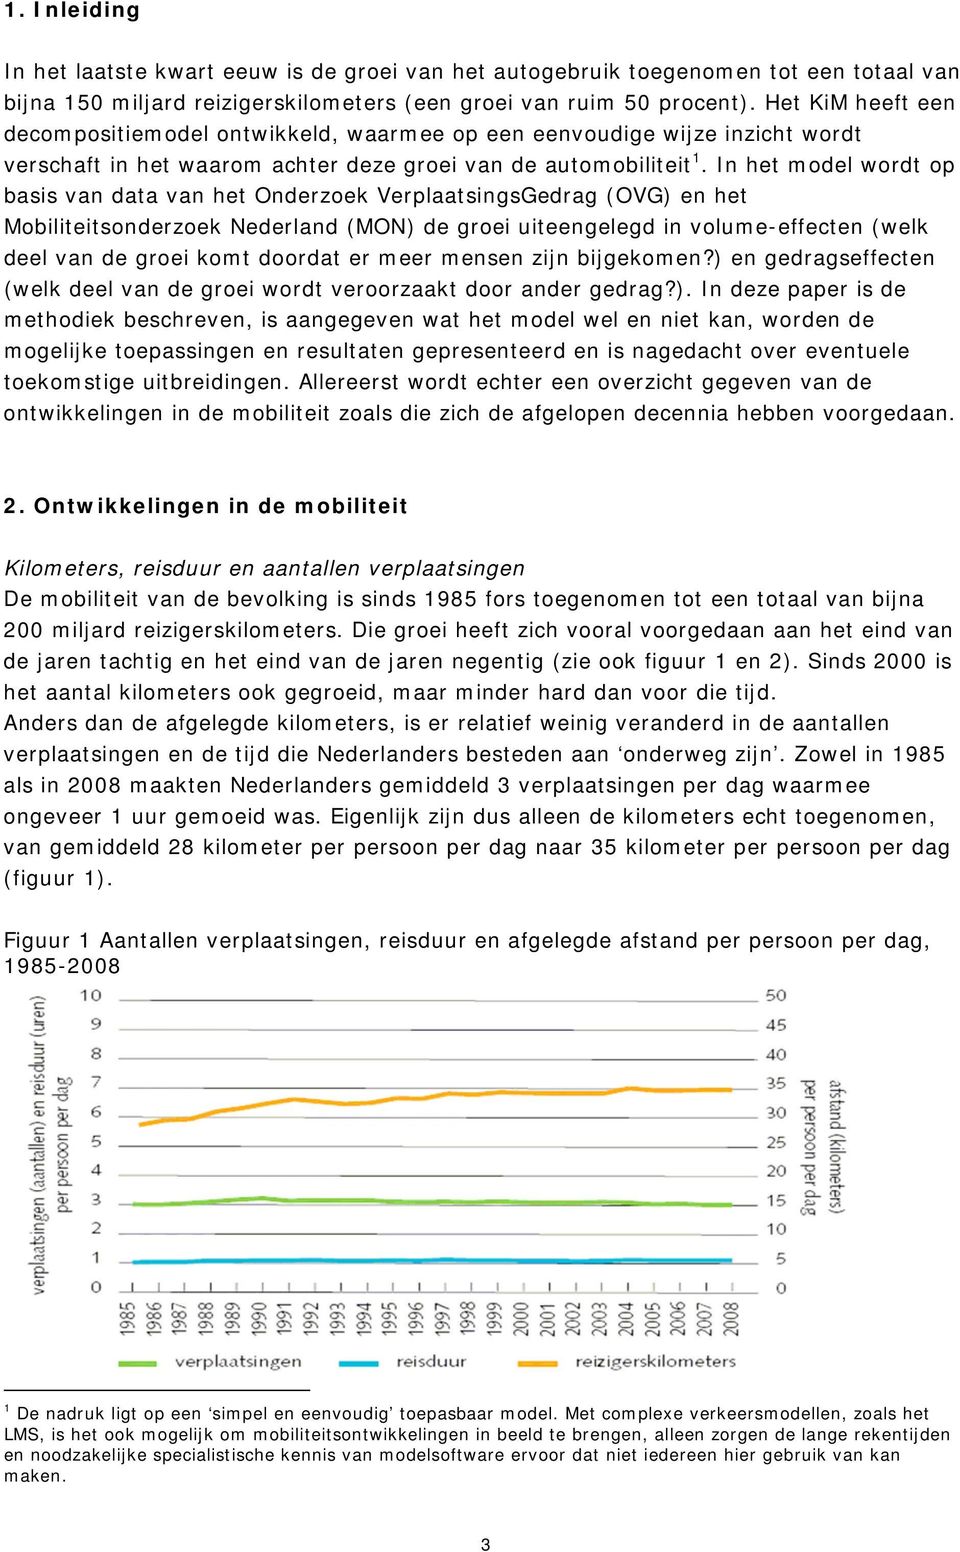 In het model wordt op basis van data van het Onderzoek VerplaatsingsGedrag (OVG) en het Mobiliteitsonderzoek Nederland (MON) de groei uiteengelegd in volume-effecten (welk deel van de groei komt